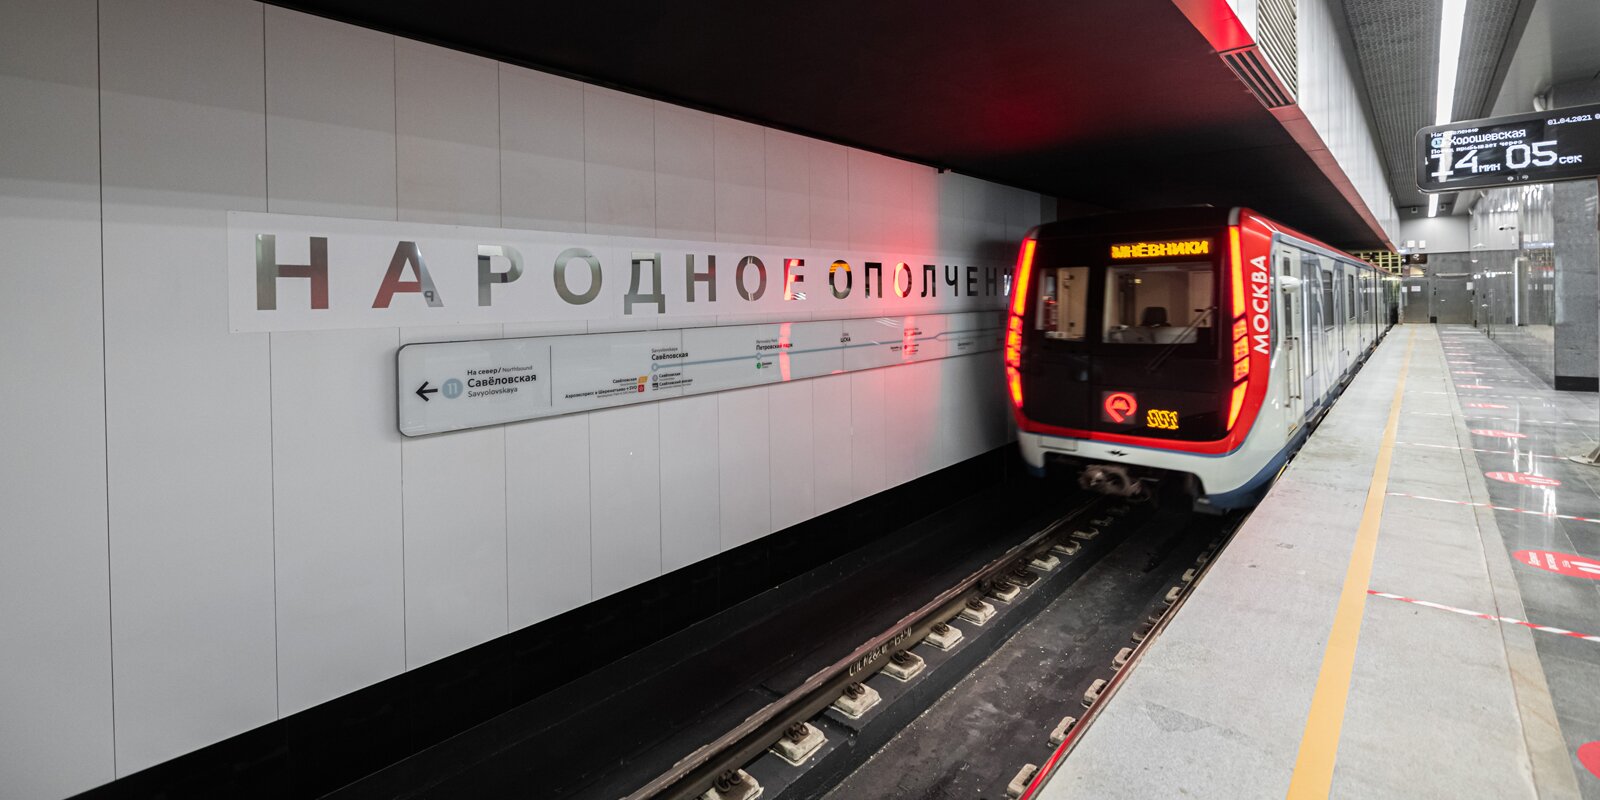 Две новых станции метро открылись в Москве